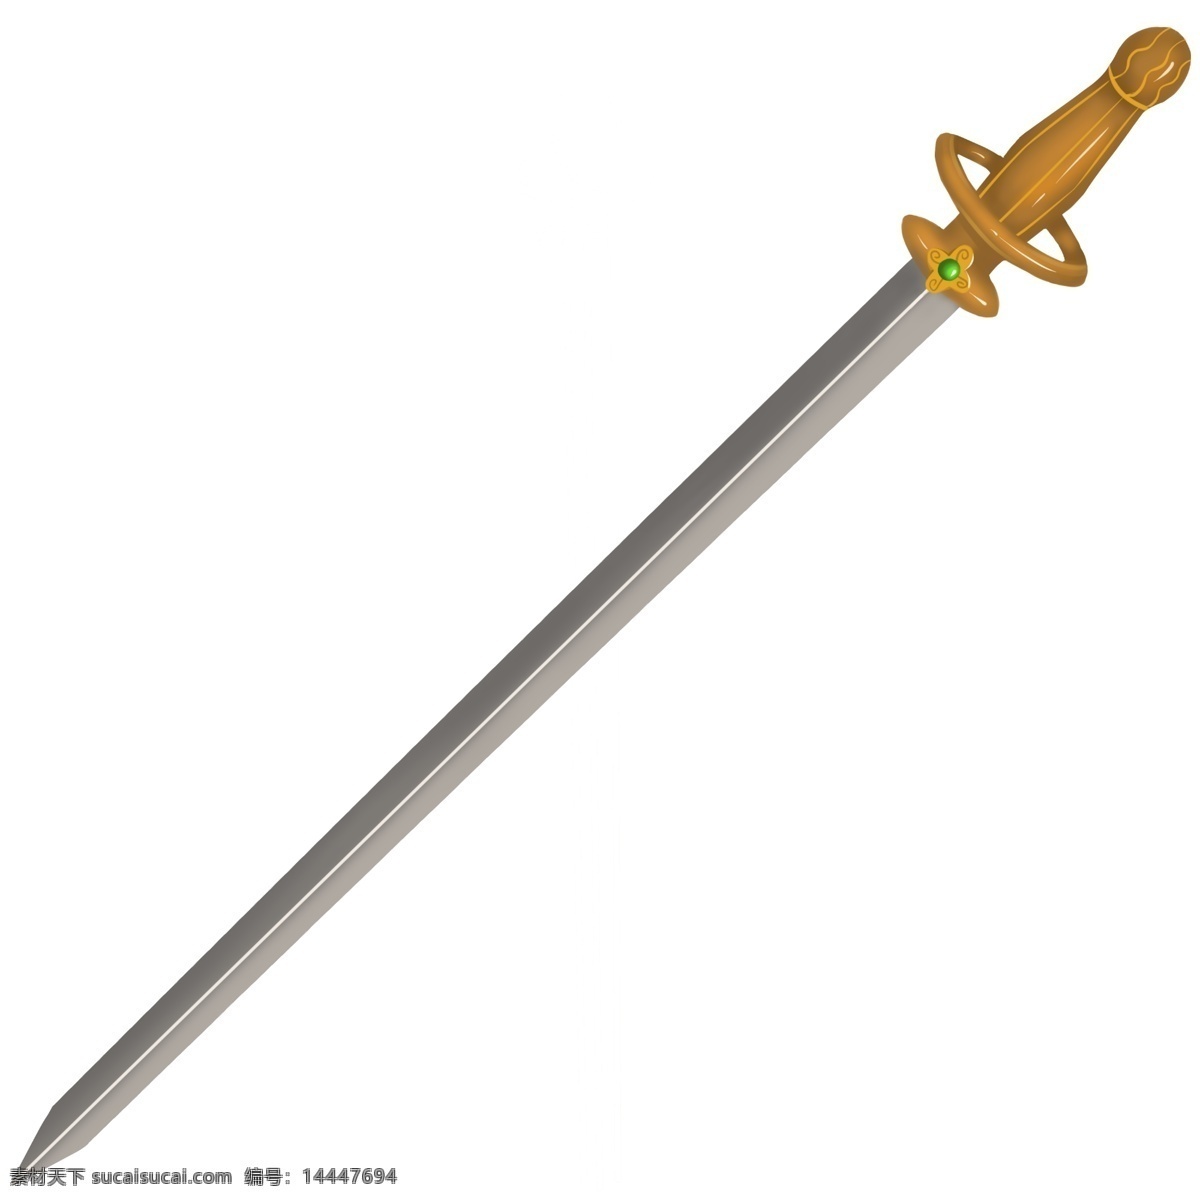 黄色 手柄 长剑 插画 黄色的手柄 漂亮的长剑 创意长剑 立体长剑 长剑装饰 锋利的长剑 长剑插画